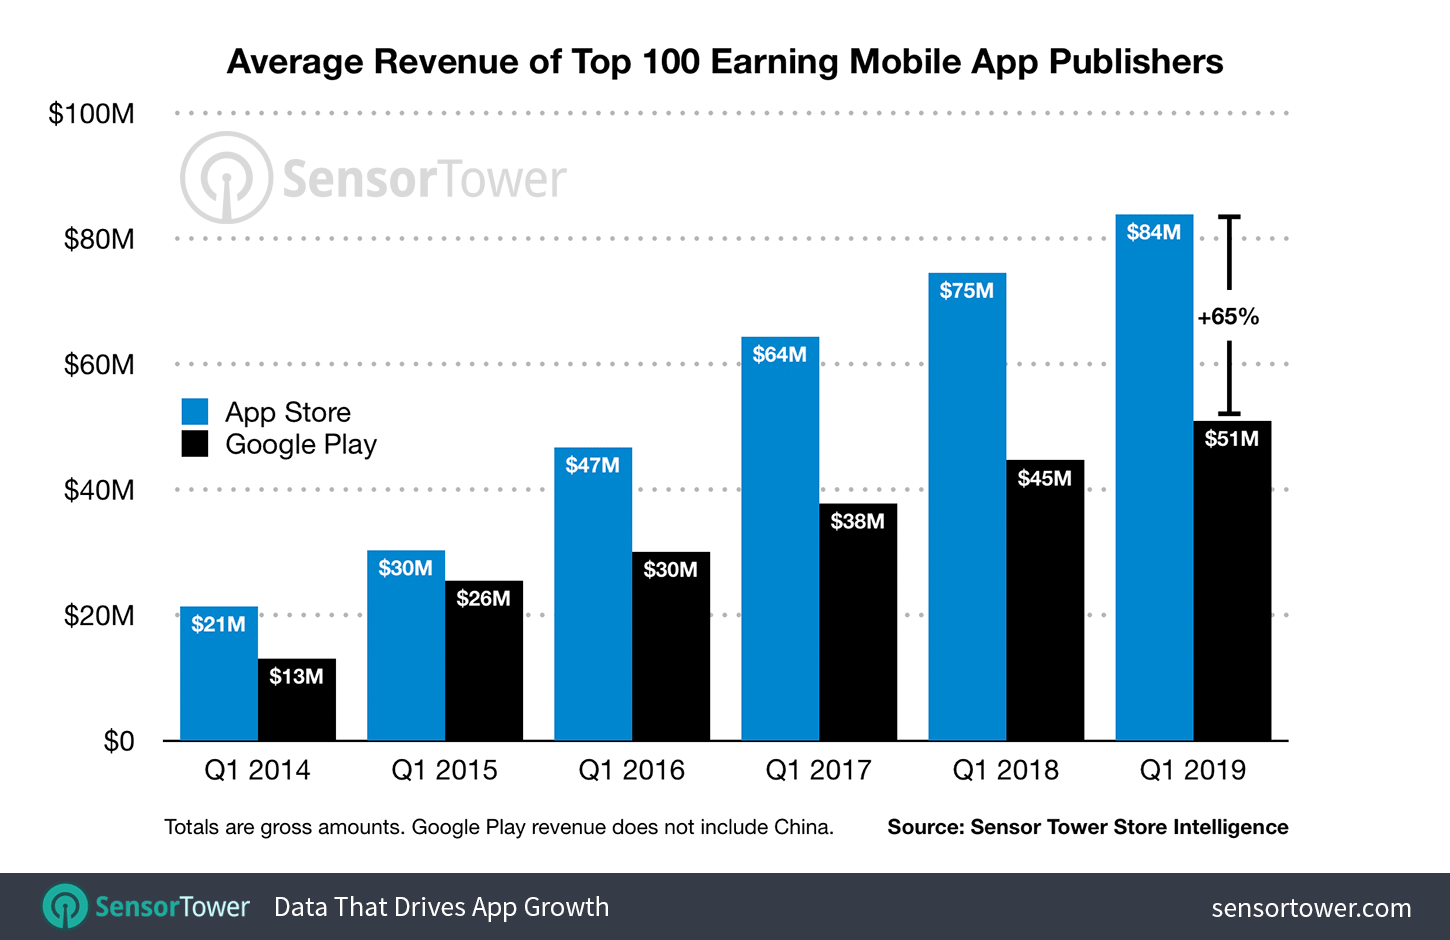 Average Revenue Per Top 100 App Publishers Q1 2019 Overall